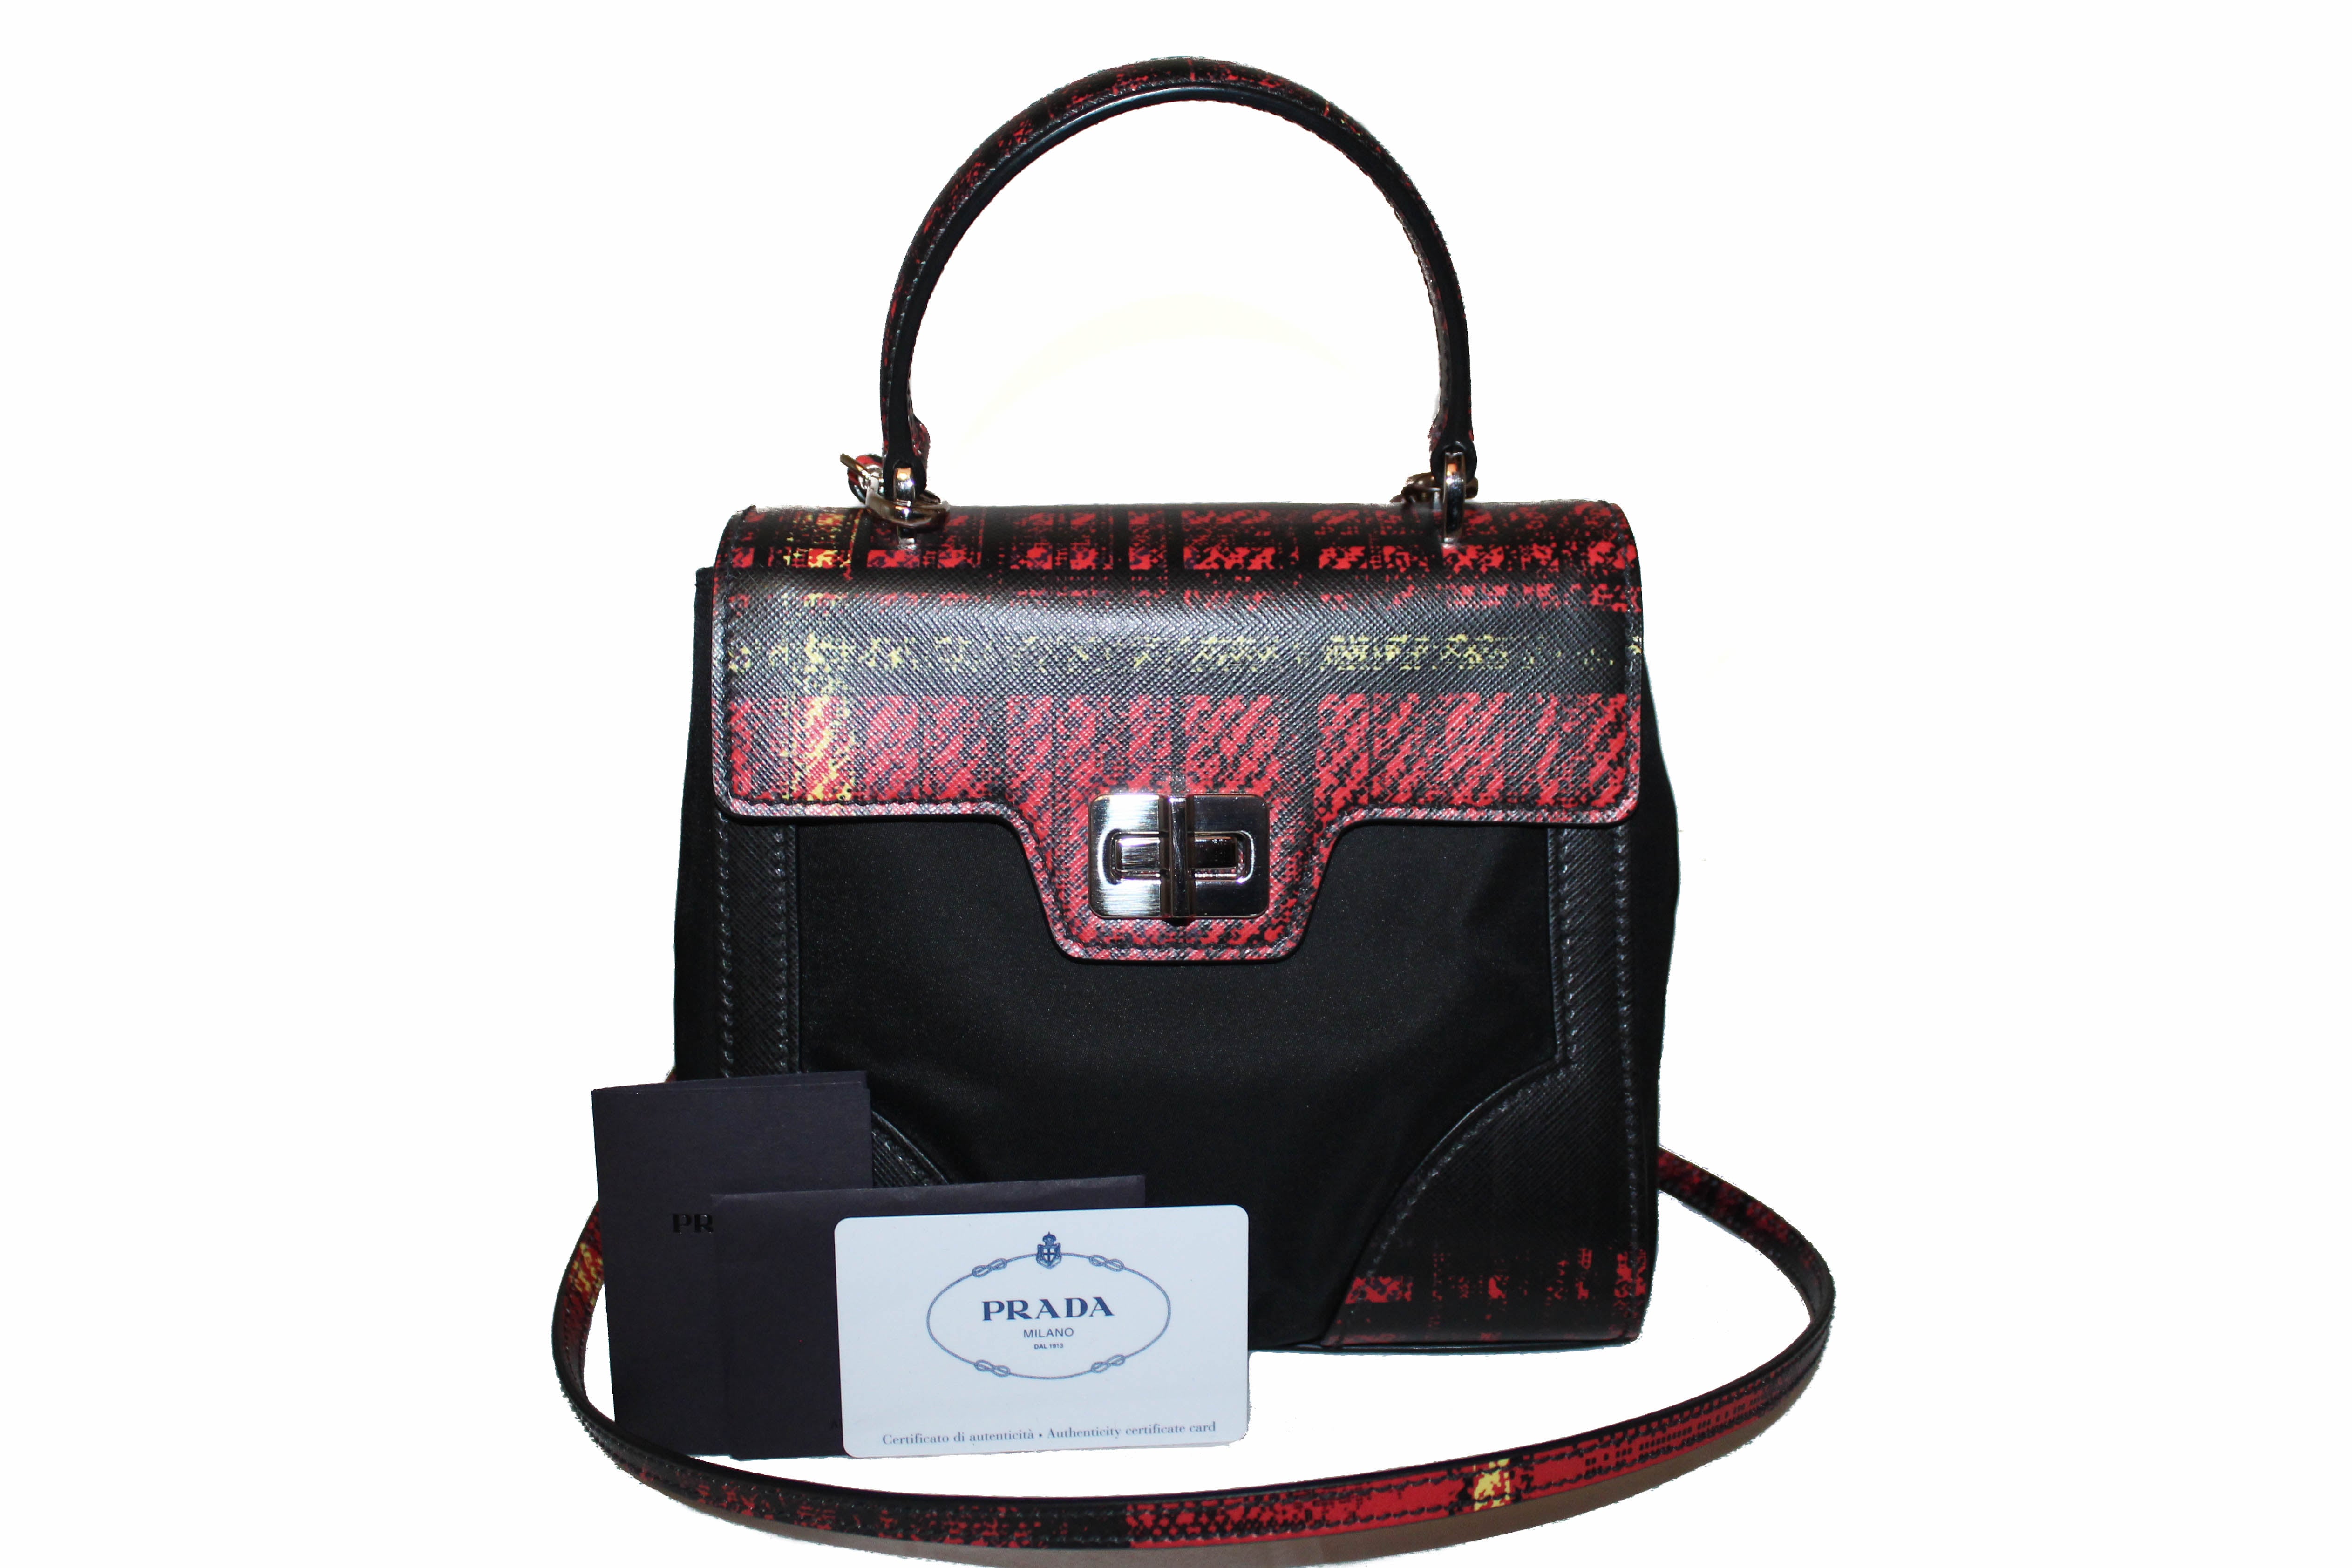 Prada Saffiano Galleria Handbag Red/White in Leather with Silver-tone - US